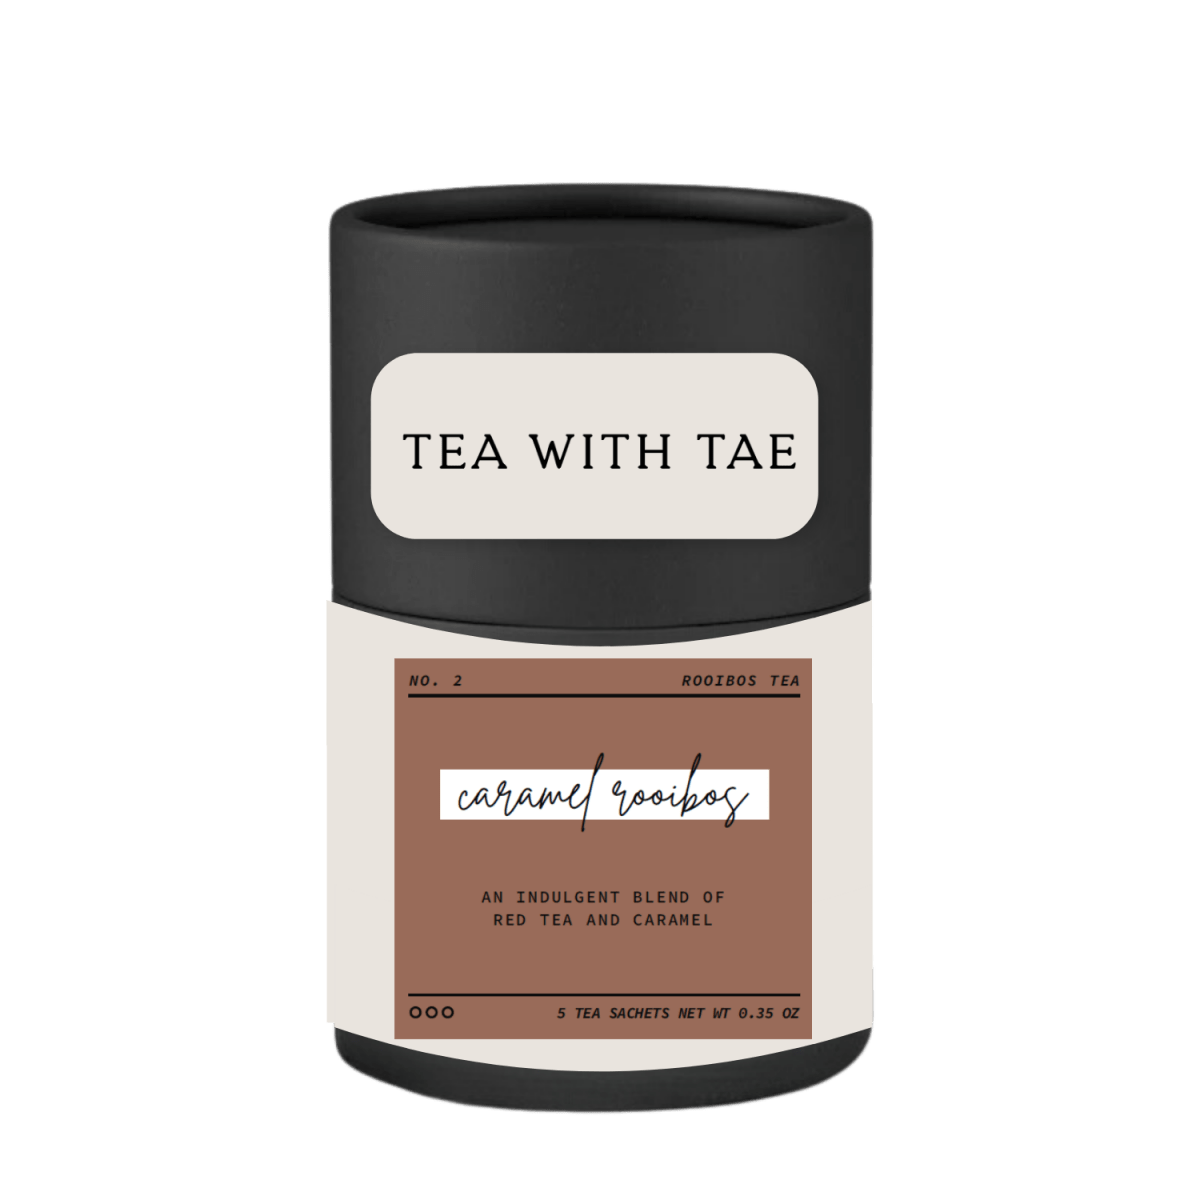 Caramel Rooibos Artisan Mini Tea Tube (5 tea sachets) - Tea with Tae